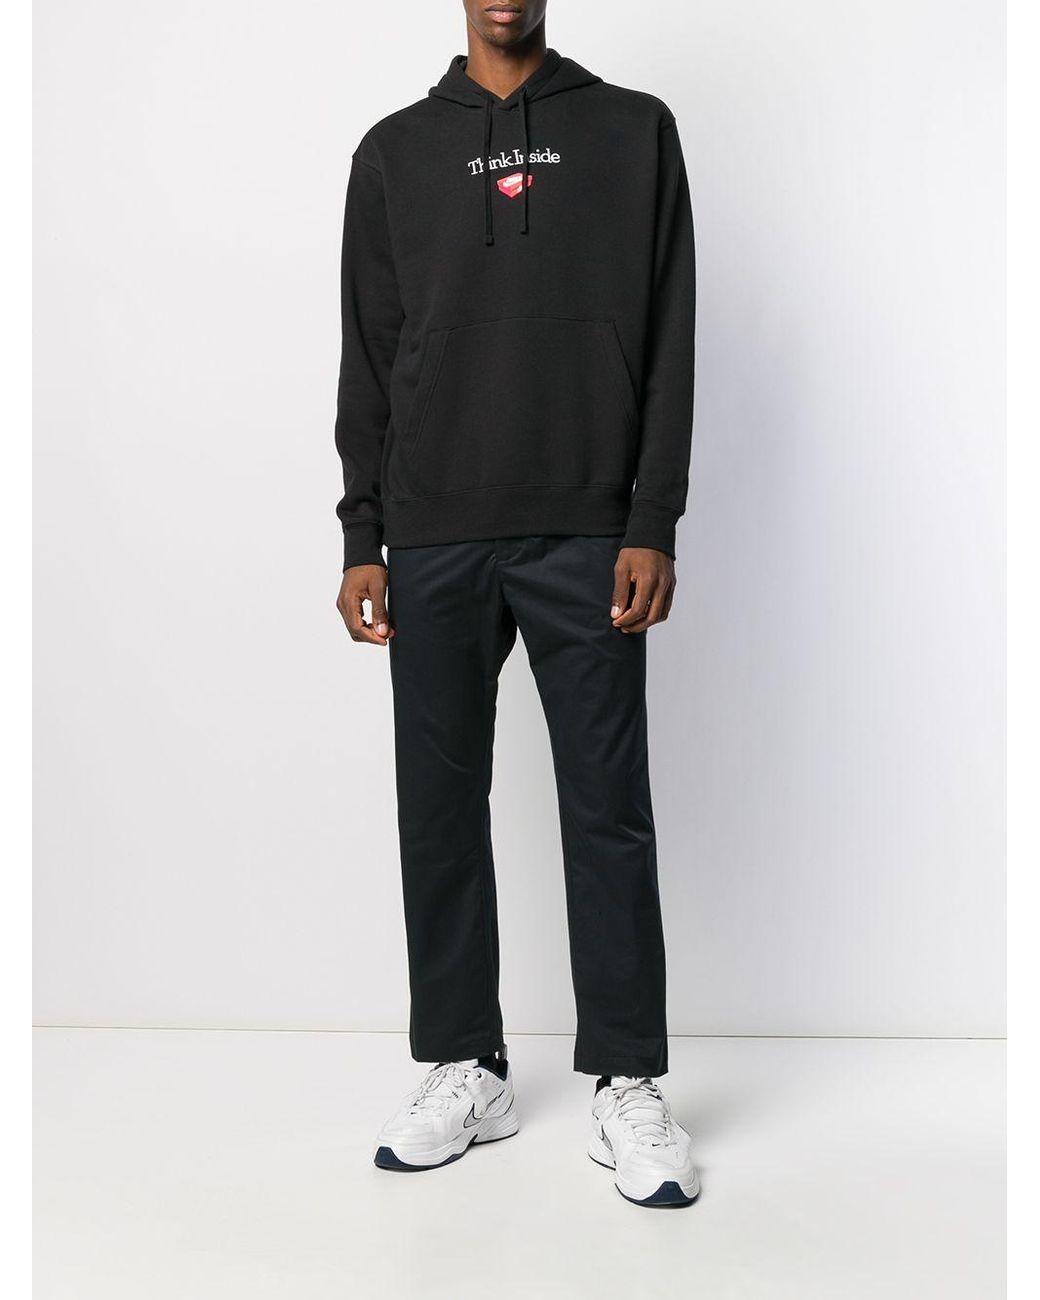 Sudadera Think Inside con capucha y diseño bordado Nike de hombre de color  Negro | Lyst